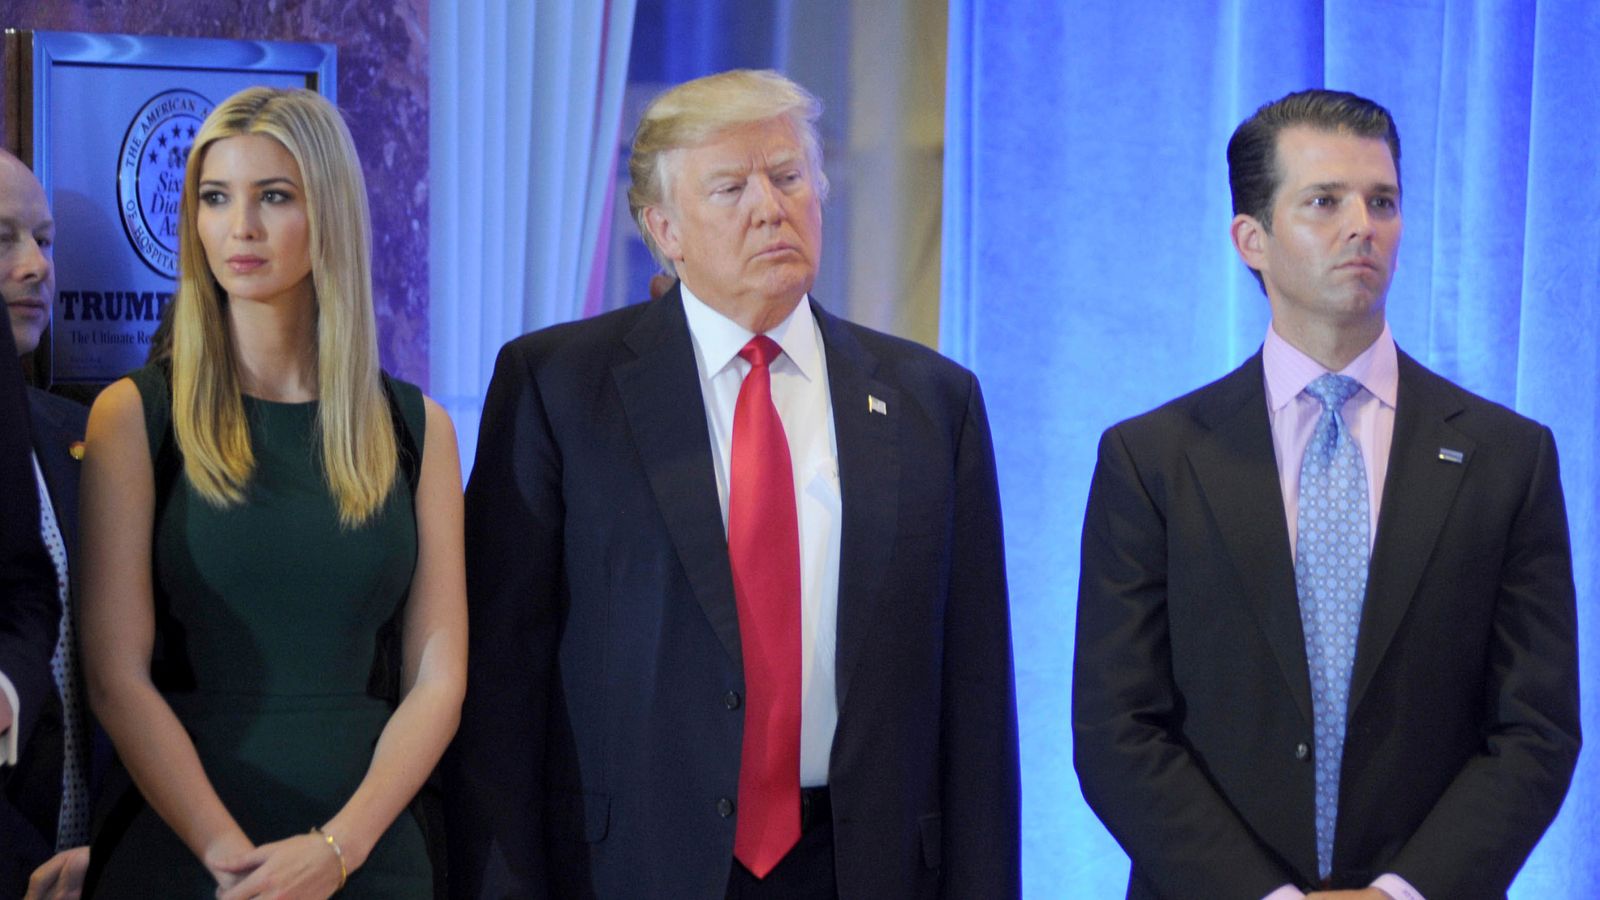 Donald Trump, Ivanka Trump e Donald Trump Jr. accettano di testimoniare nell’indagine sulle pratiche commerciali dell’ex presidente |  Notizie dagli Stati Uniti